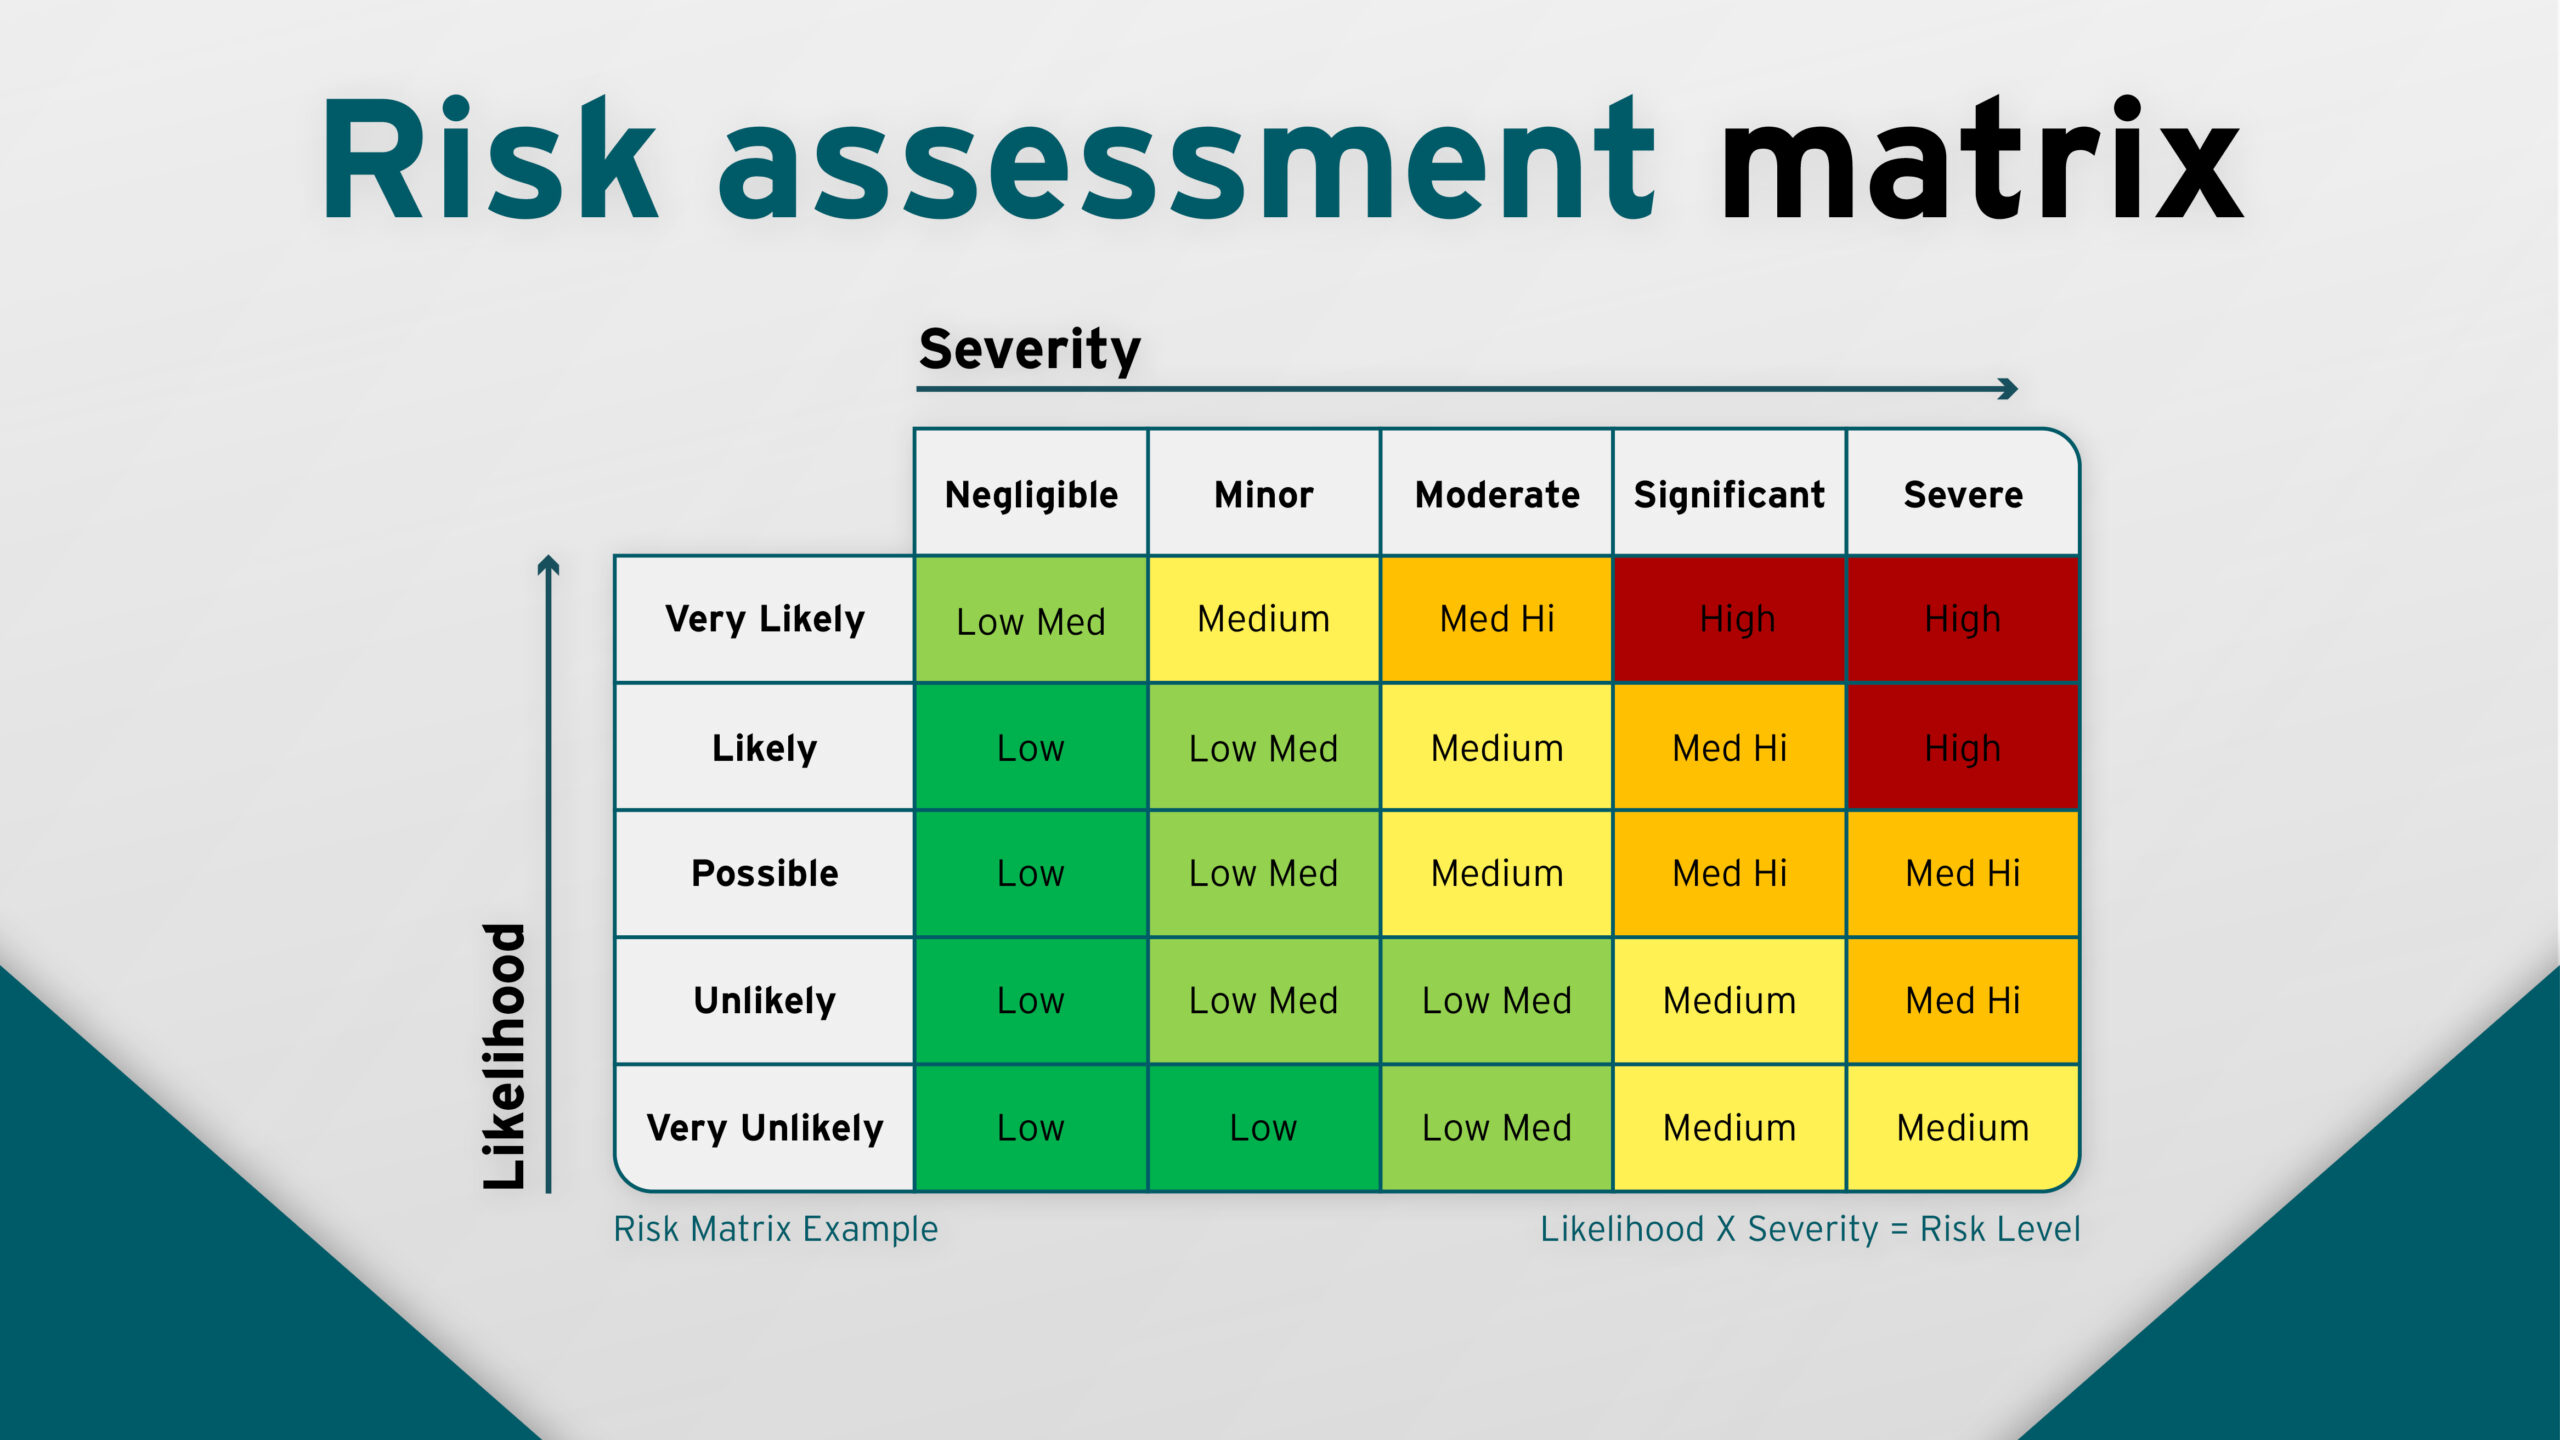 Risk Matrix For Risk Assessment - Image to u